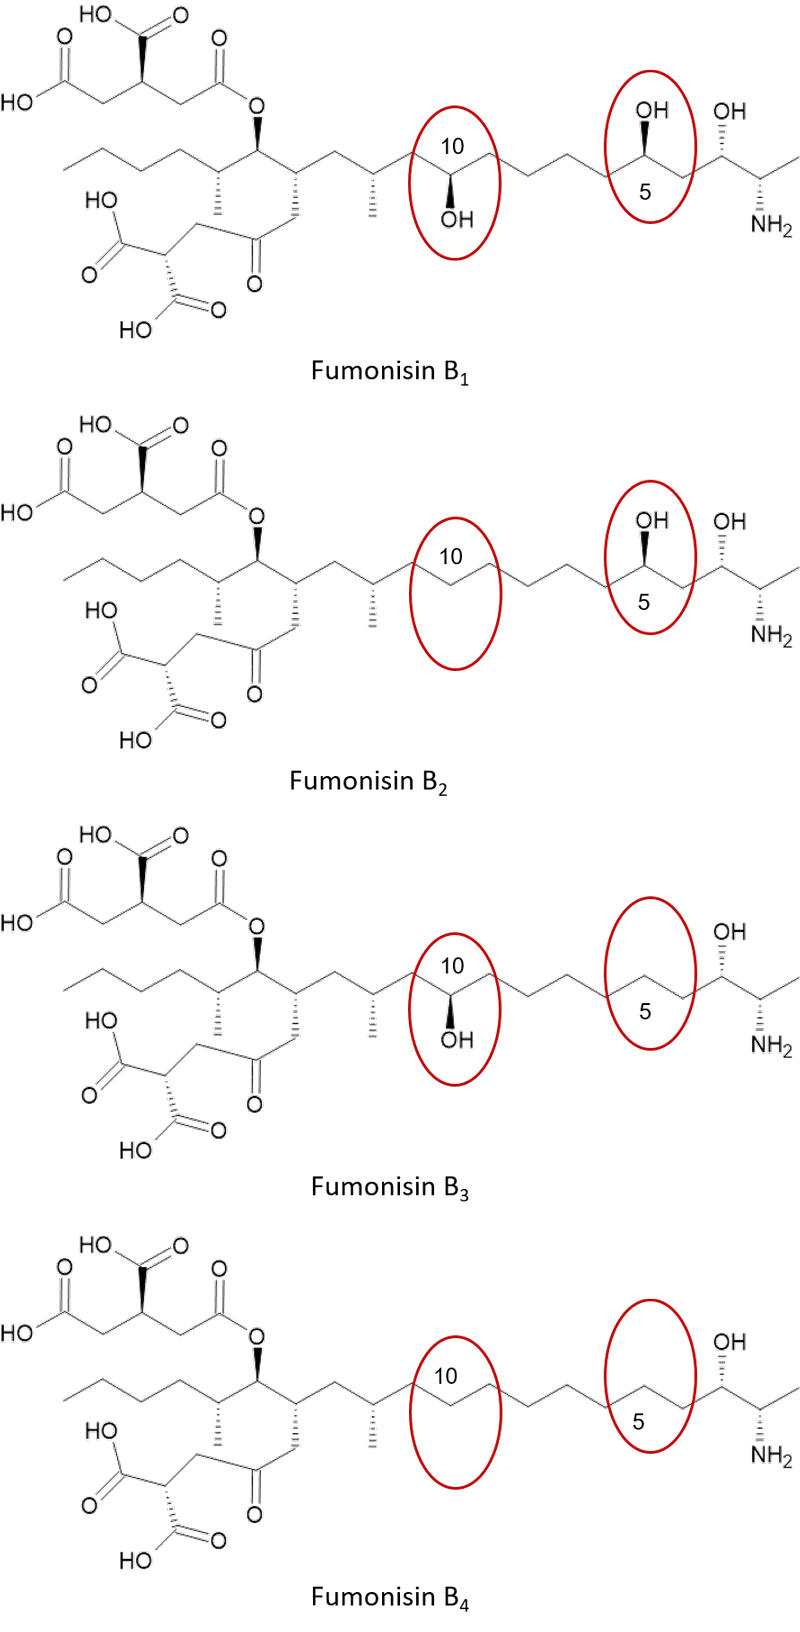 Strukturformeln der rinzelnen Fumosin-Vertreter mit roter Umrandung der unterschiedlichen Gruppen